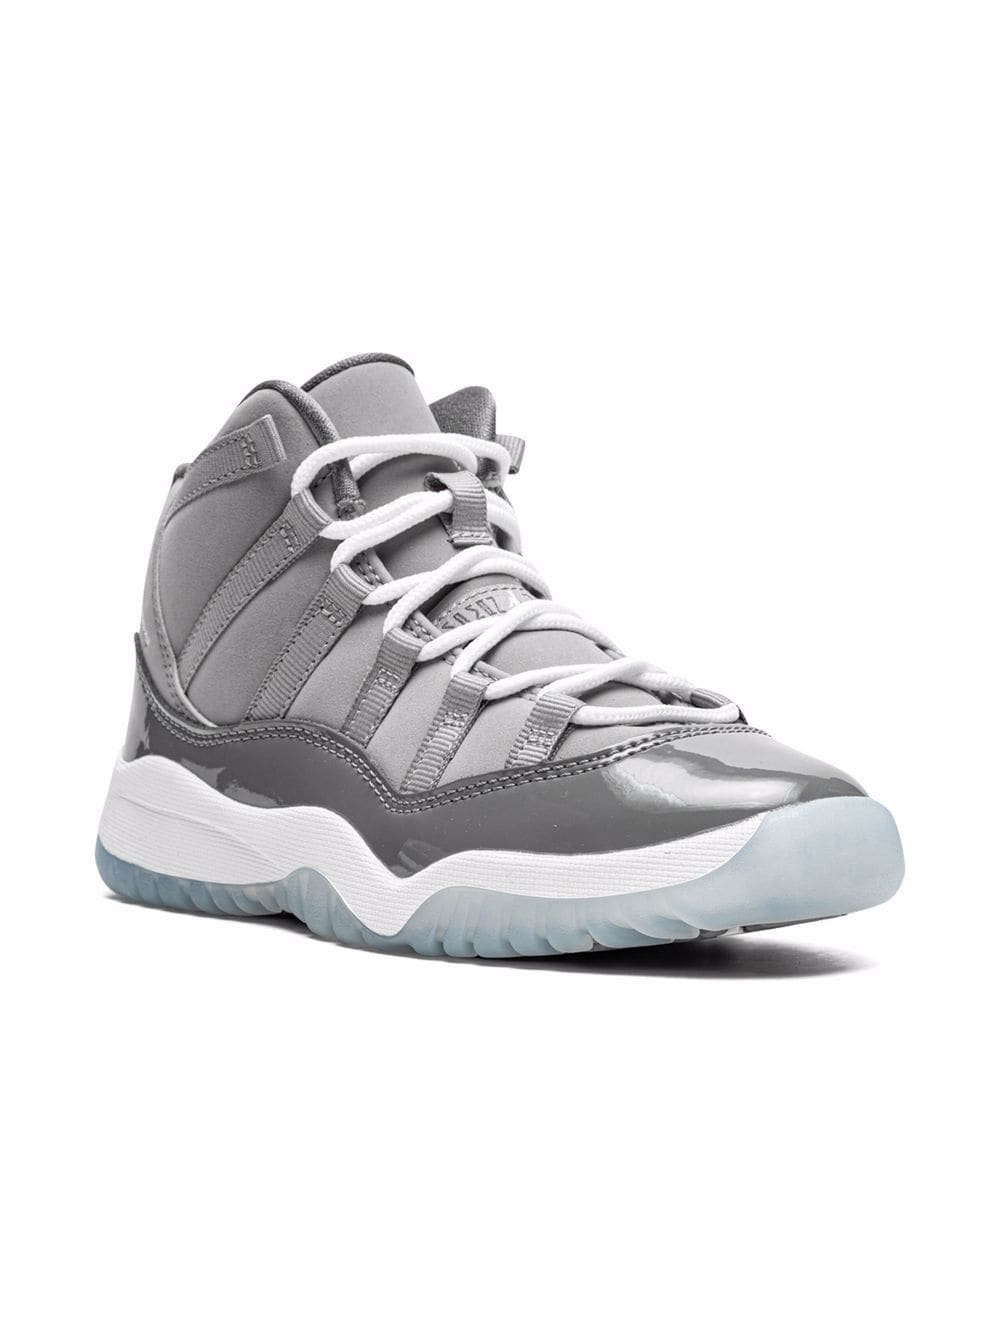 Image 1 of Jordan Kids Jordan 11 Retro  "Cool Grey 2021" sneakers